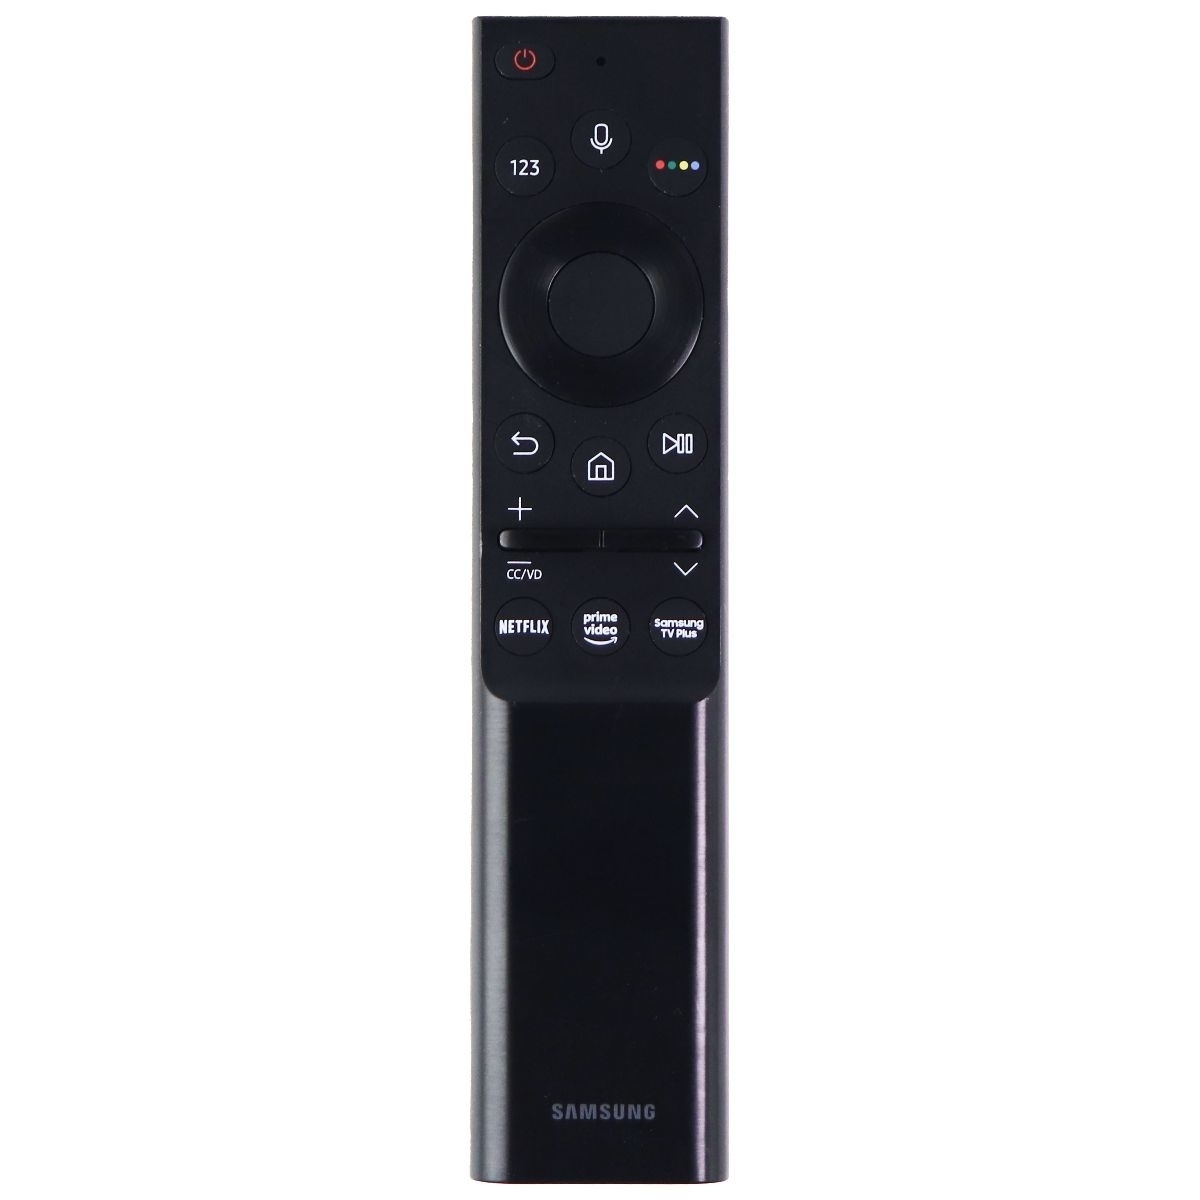 Samsung Remote Control (BN59-01363A) For Select Samsung TVs - Black GRADE A